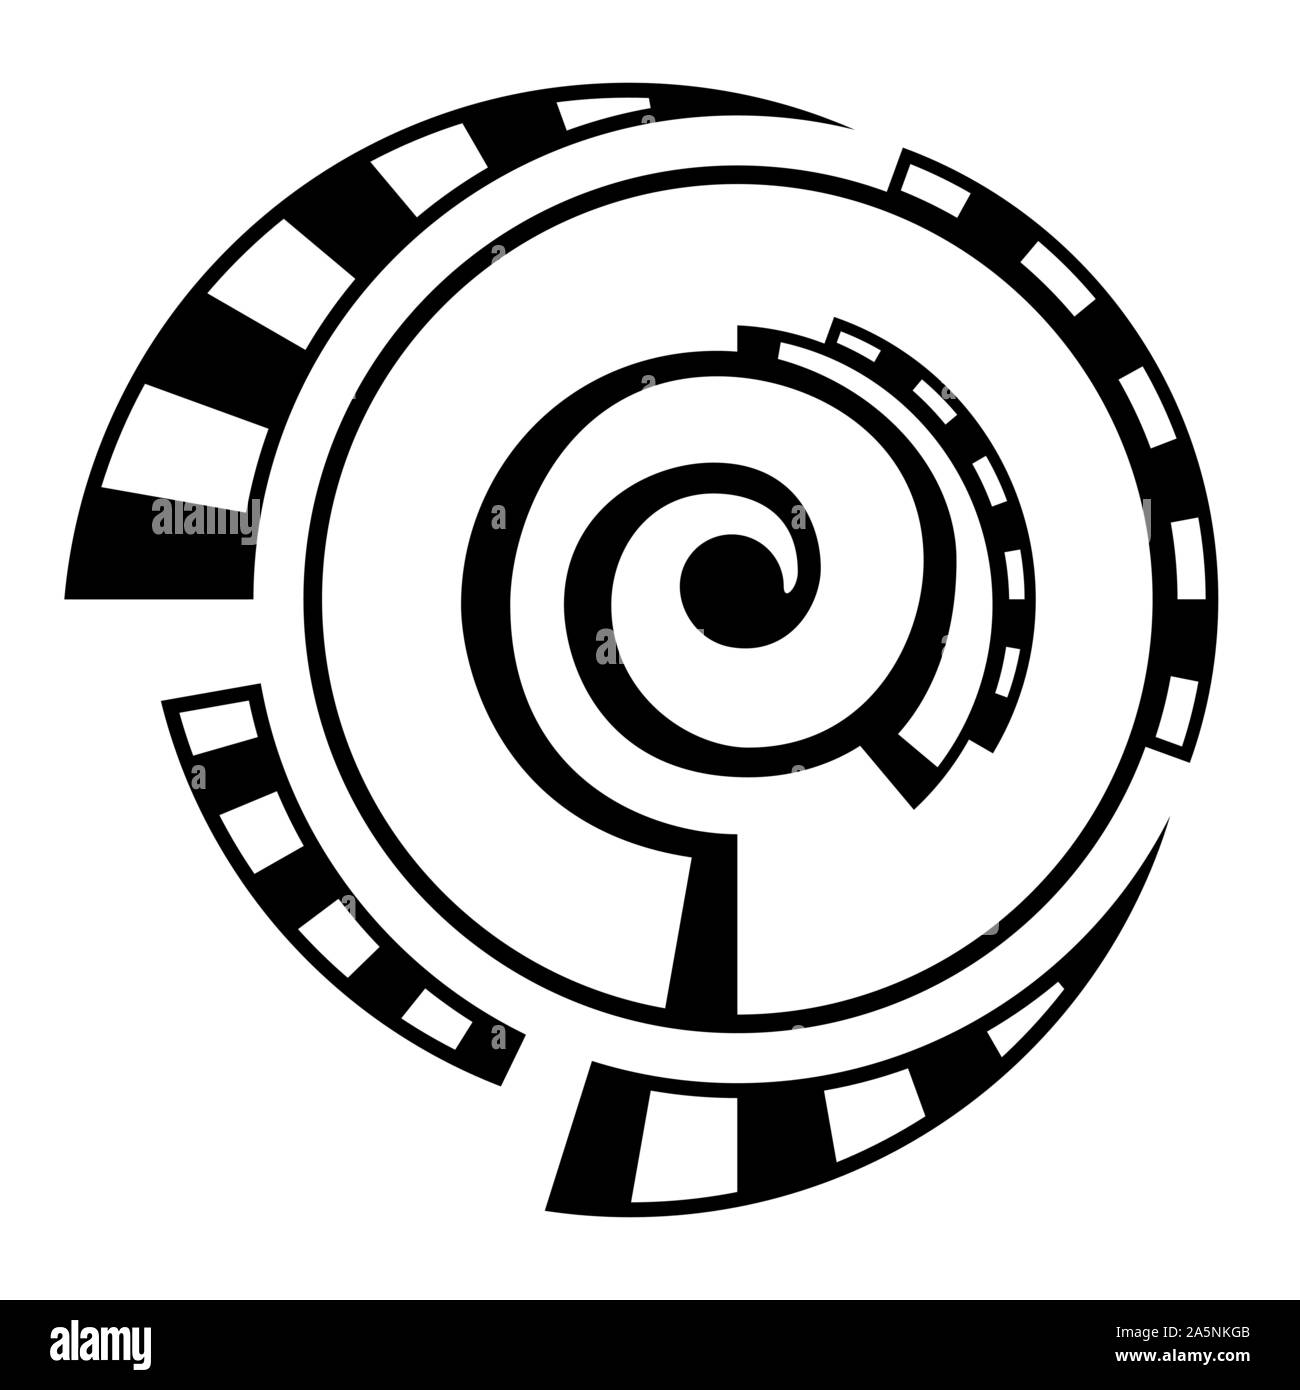 Abstract simbolo geometrico, isolato su sfondo bianco. Spirale, forma rotonda. Elemento a spirale con tratteggiata, spezzate. Logo lineare. Illustrazione Vettoriale